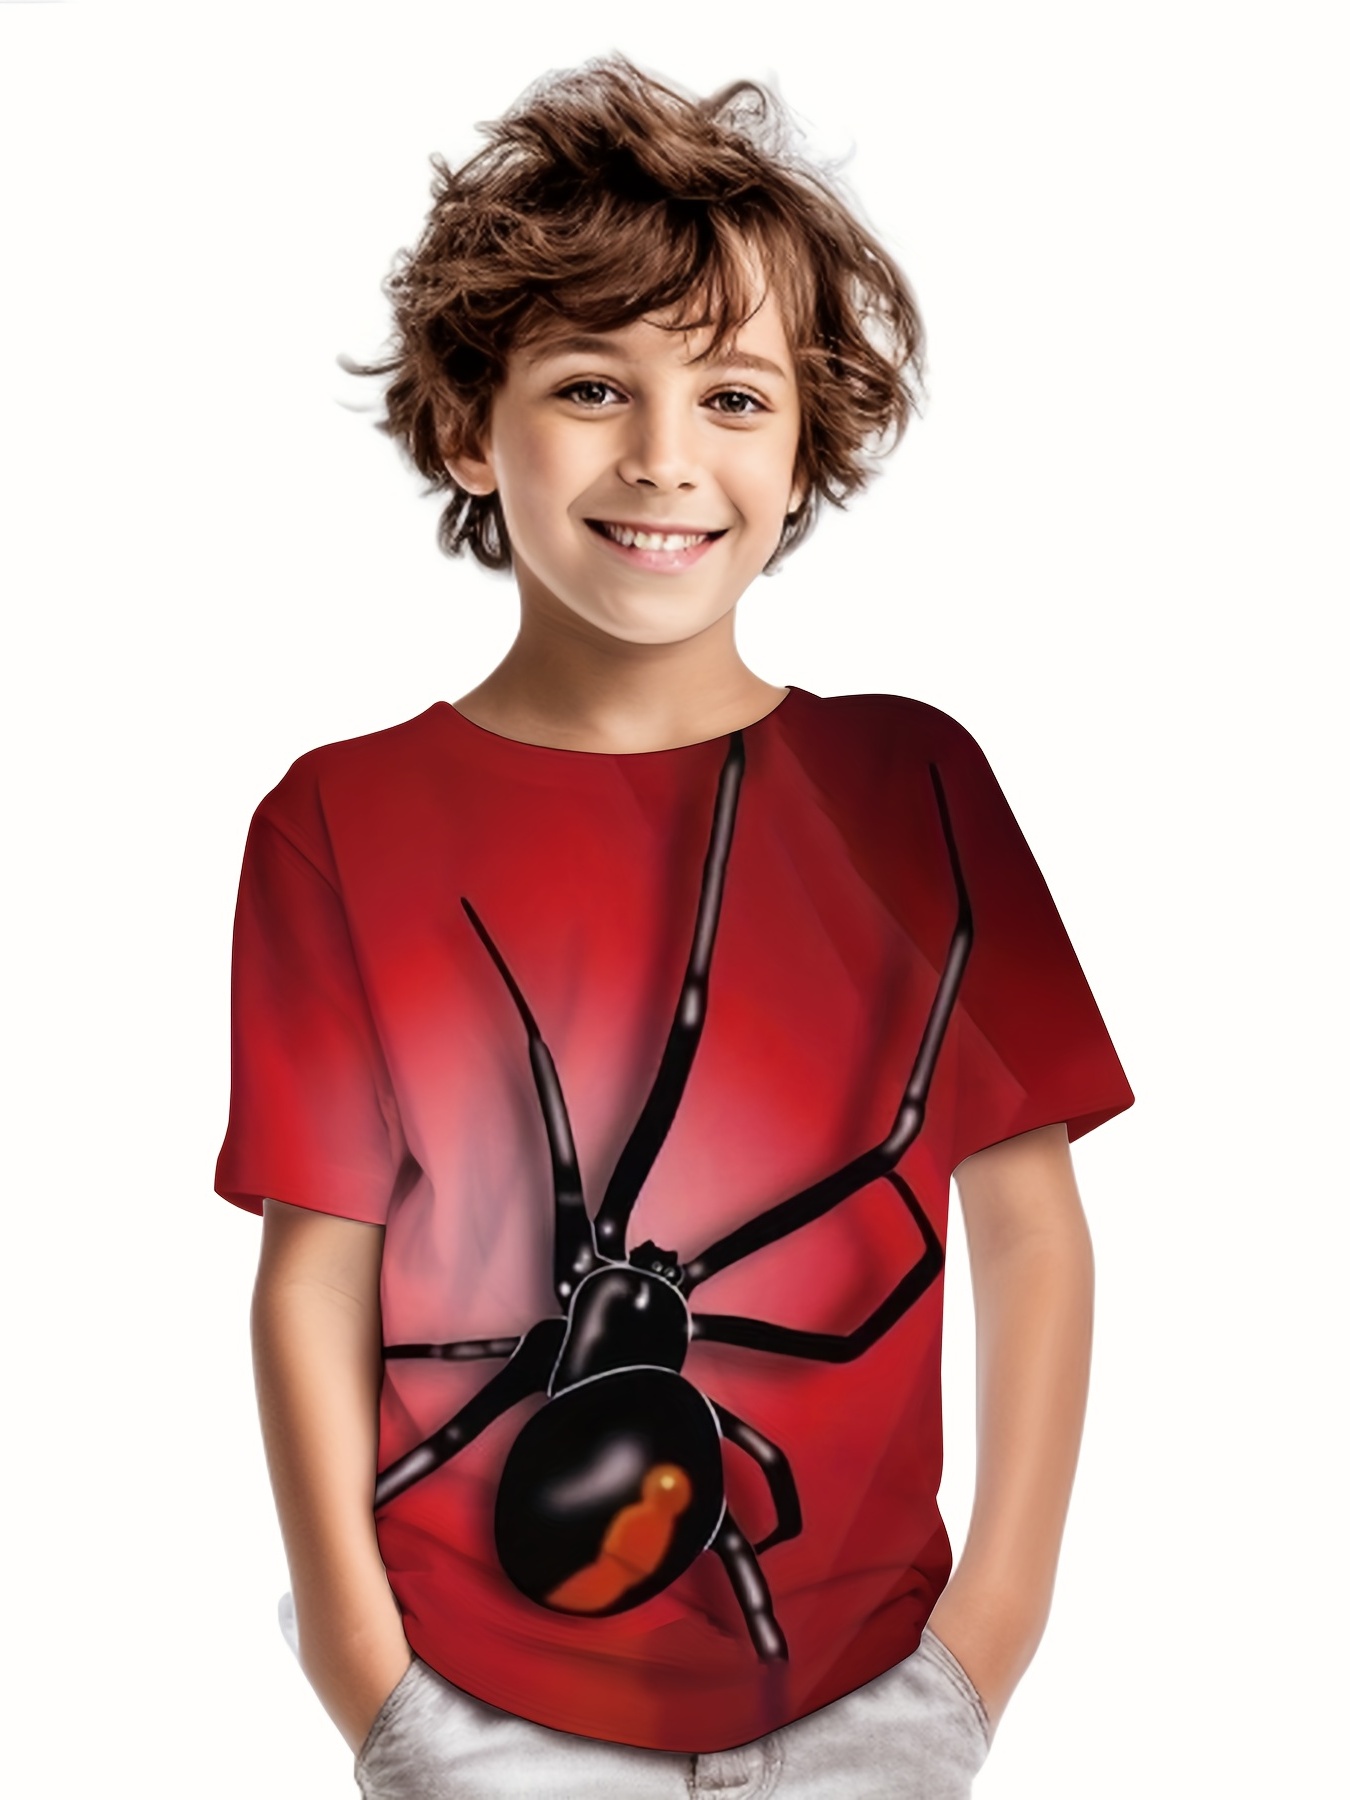 Camiseta de niño, manga corta roja de Spiderman - Ponemos la Fantasía!